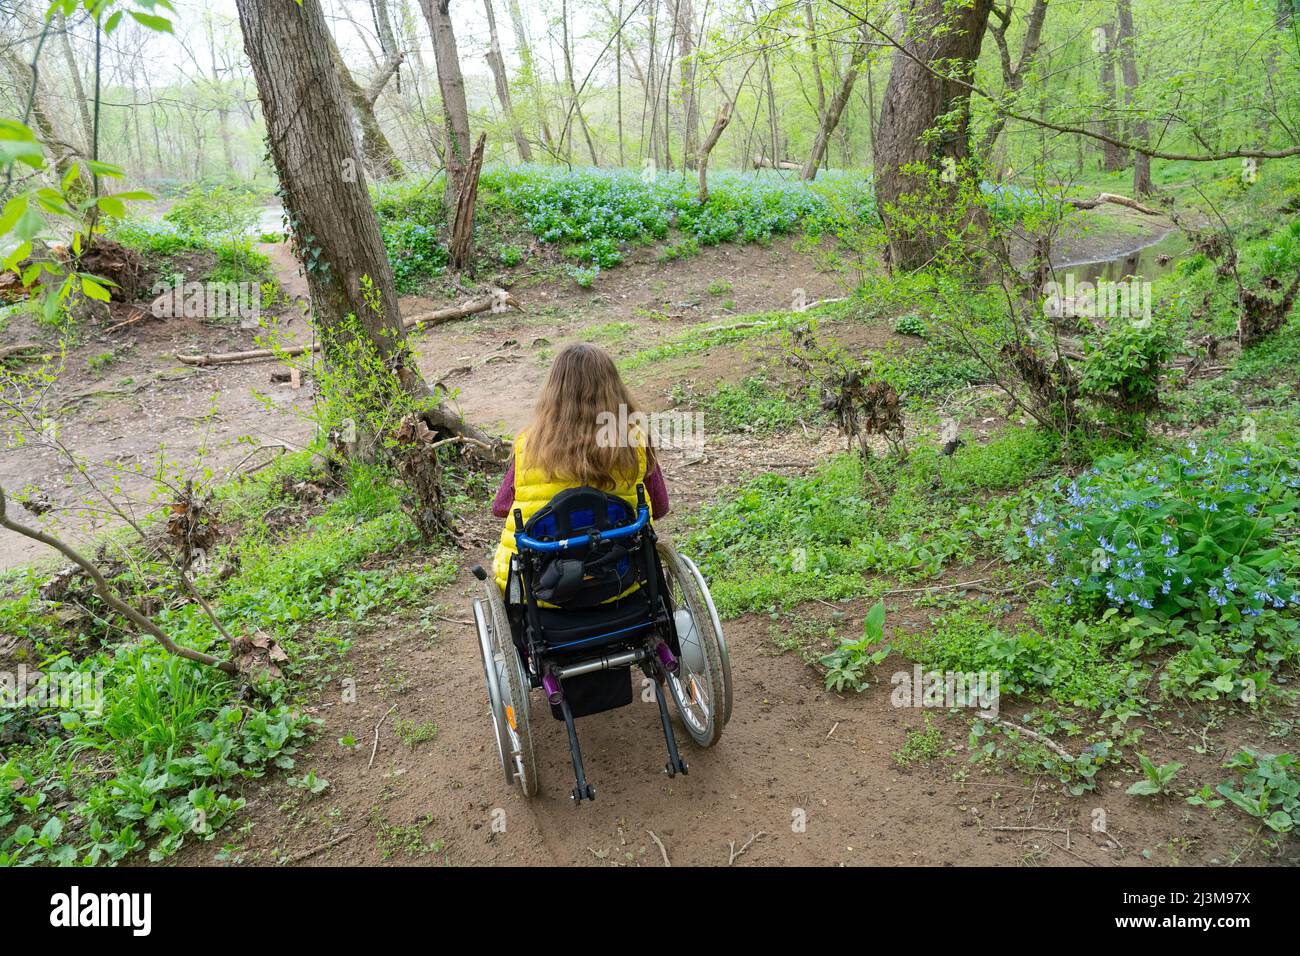 Fille en fauteuil roulant sur un sentier accidenté pour explorer les fleurs sauvages au bord du fleuve Potomac; Cabin John, Maryland, États-Unis d'Amérique Banque D'Images